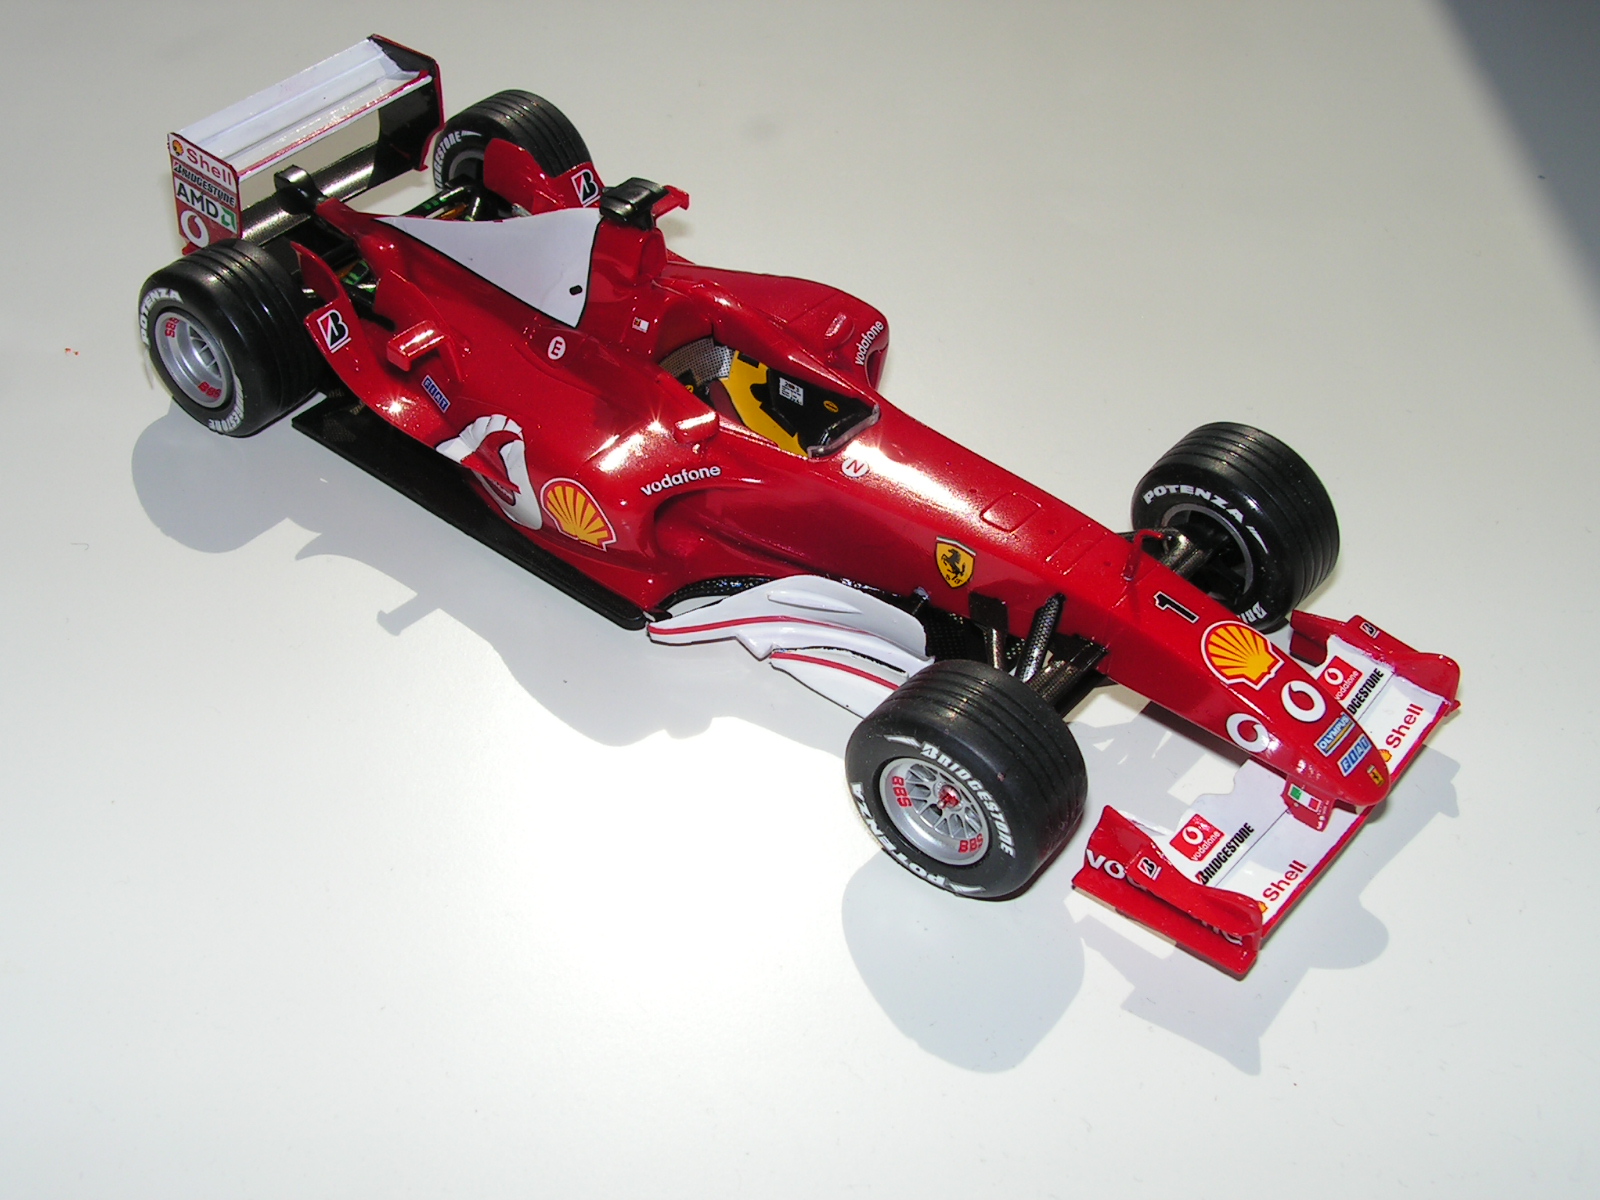 Ferrari F2003